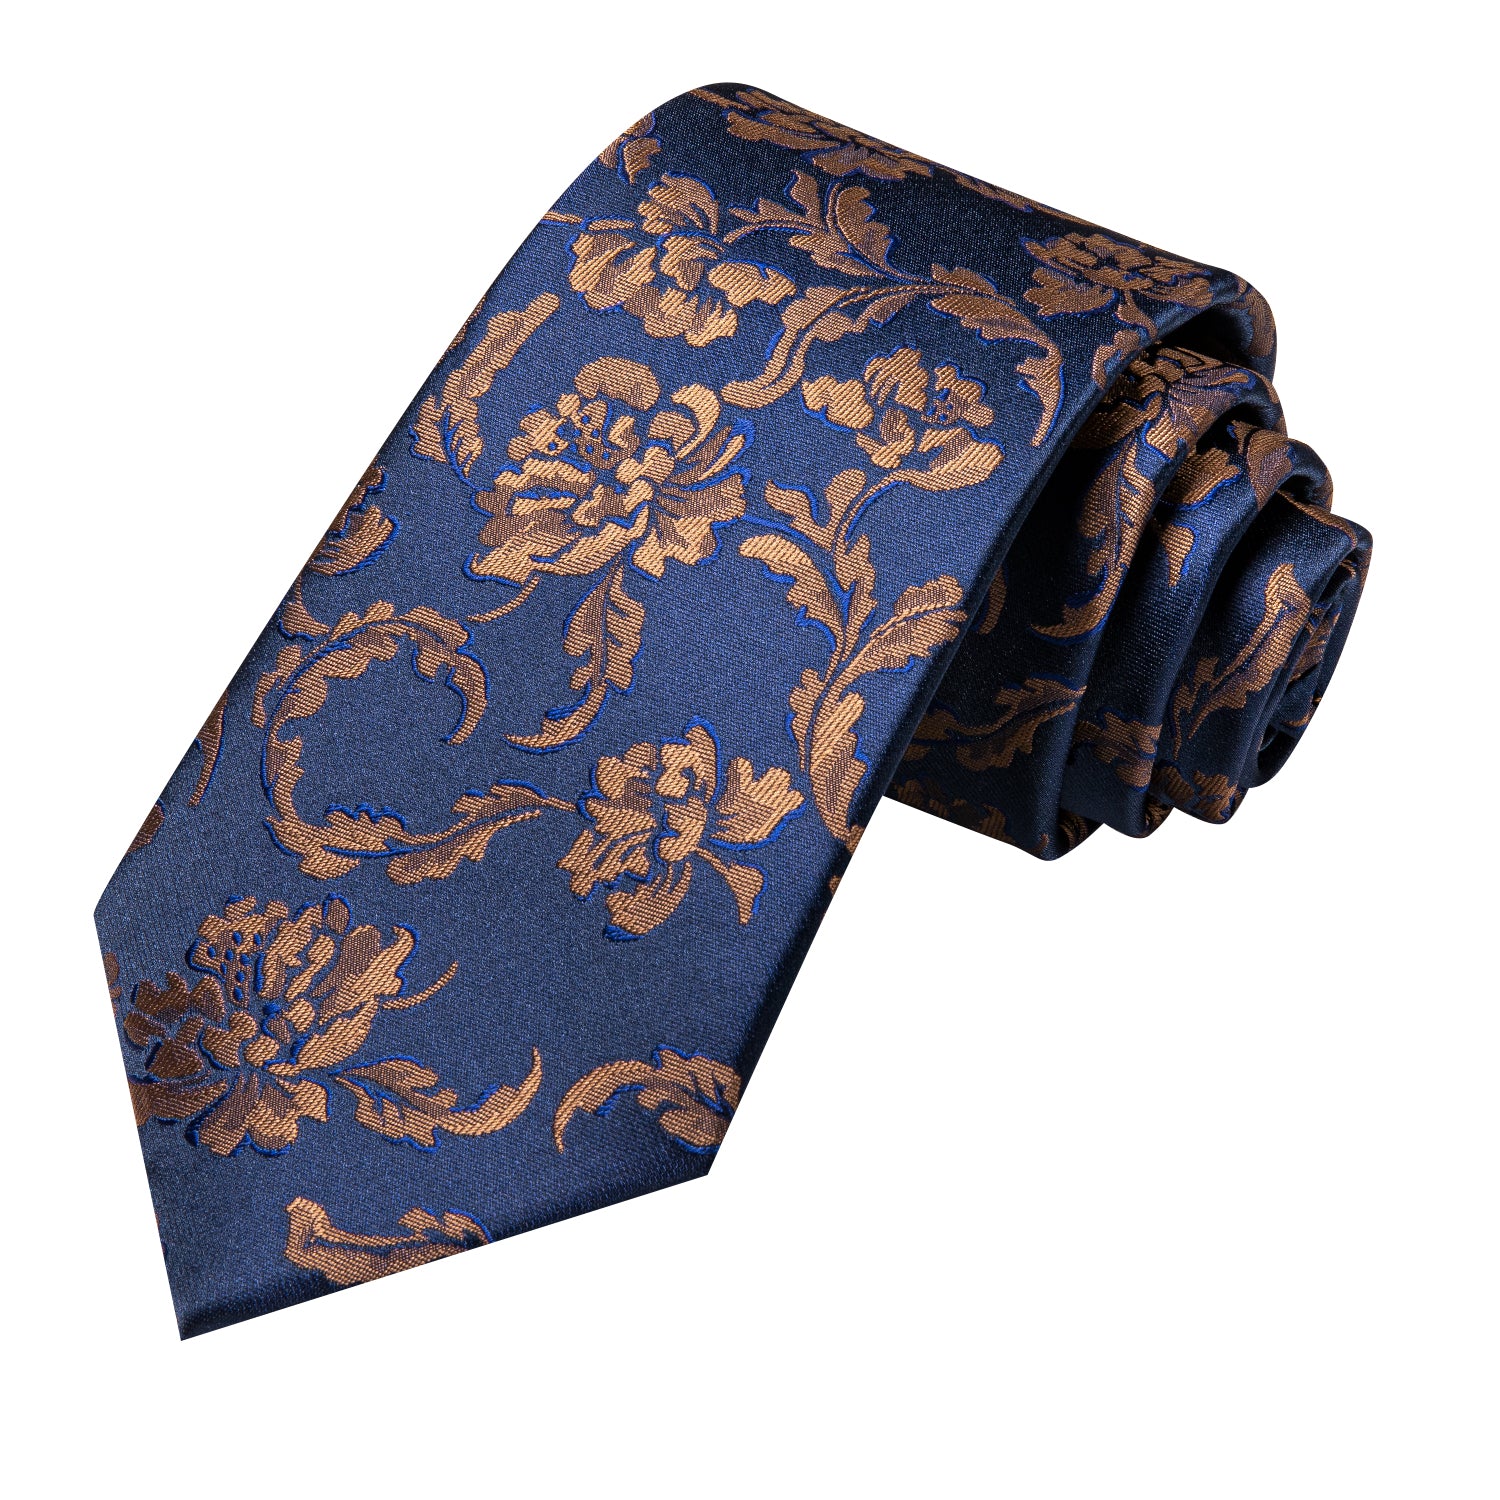 Hi-Tie Blue Gold Floral Men's Tie Pocket Square Cufflinks Set